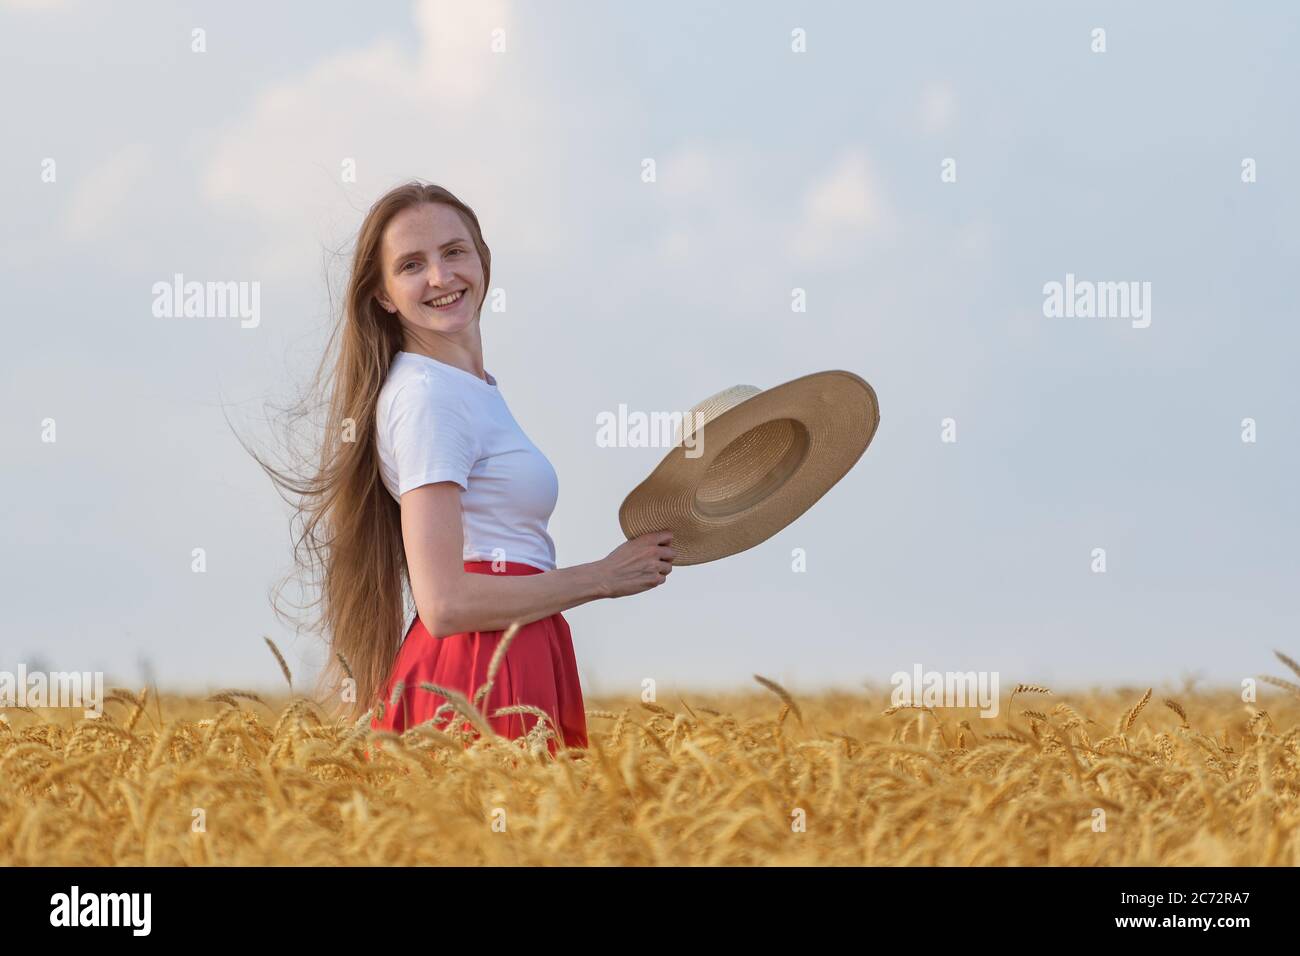 Junge Frau mit braunen Haaren steht im Feld von reifen Weizen hält Hut. Urlaub auf dem Land. Stockfoto